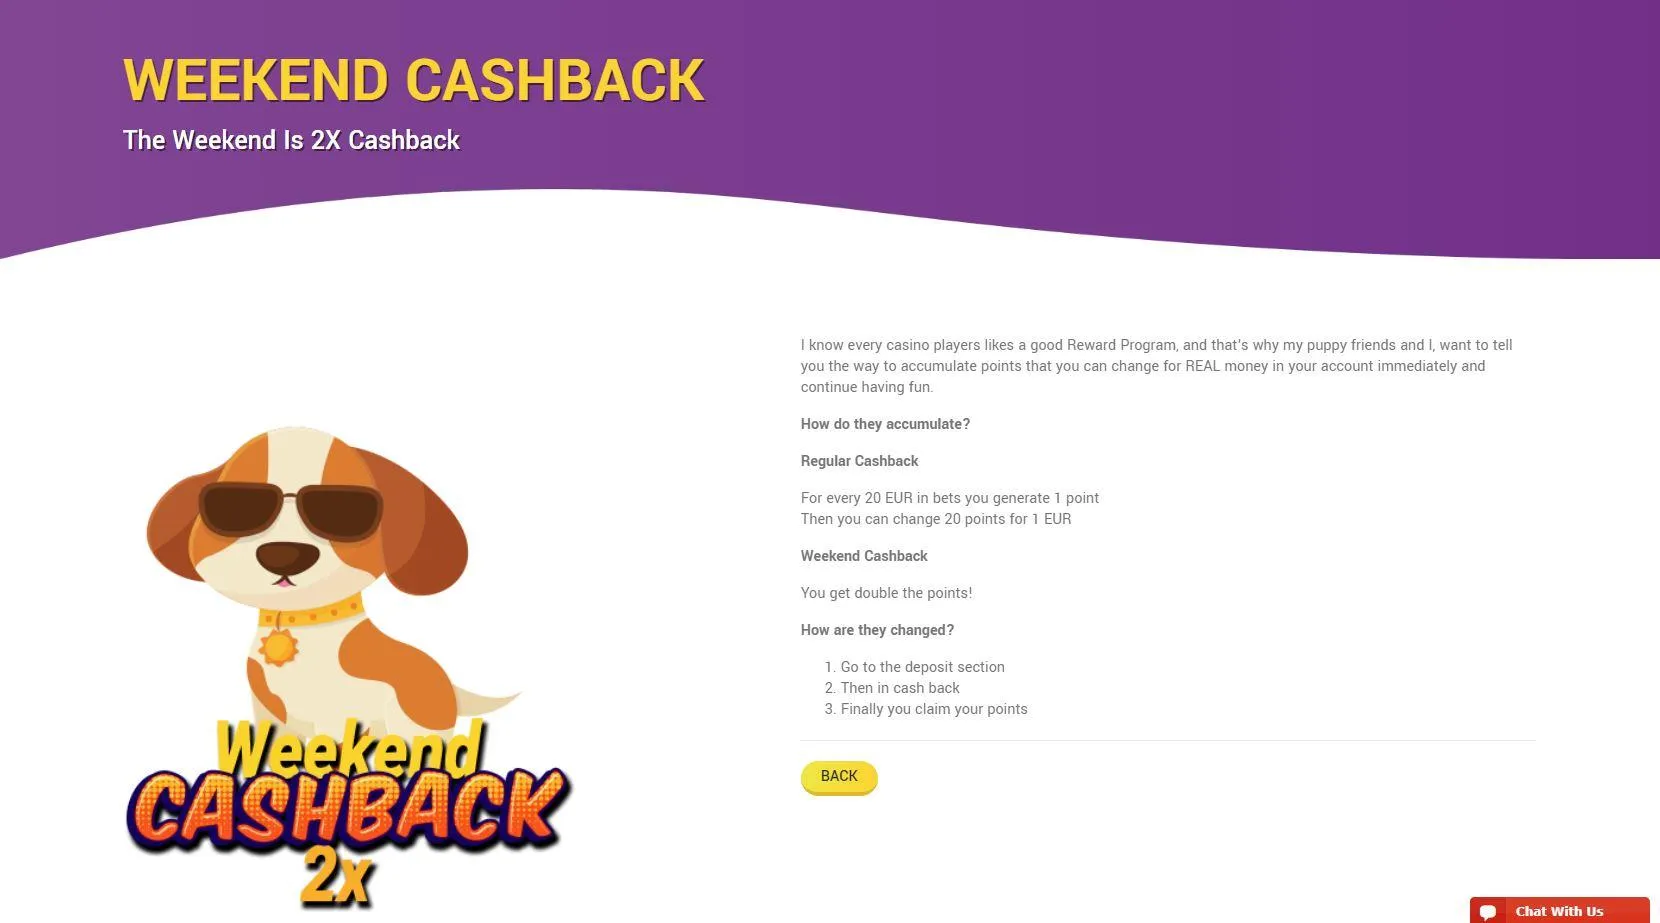 wills casino cashback promotion online casinos ireland cashback bonuses and promotions